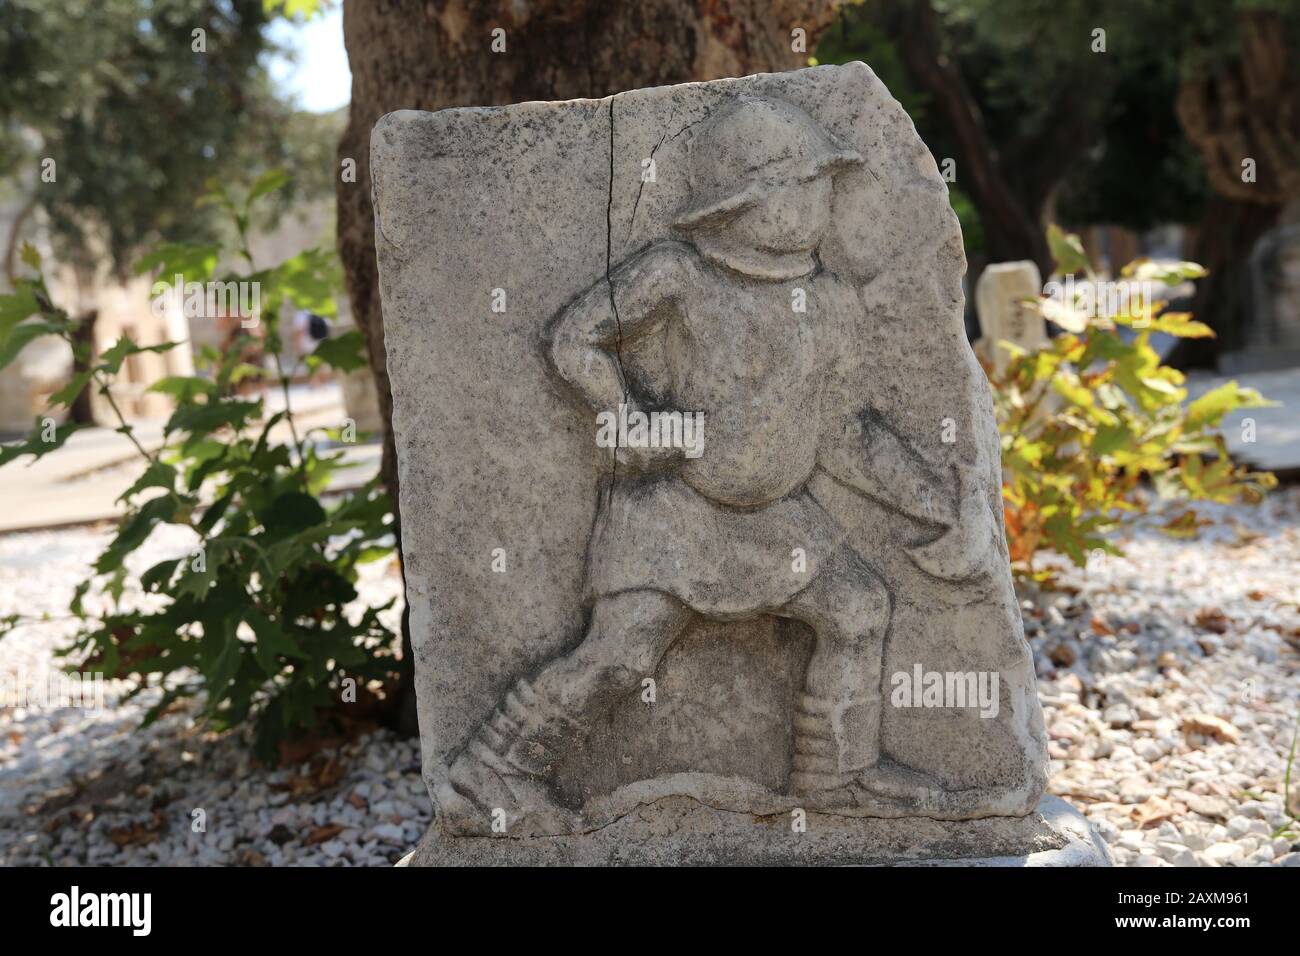 Ciseaux, type de gladiateur romain. Décharge. Musée D'Archéologie Sous-Marine De Bodrum. Turquie. Banque D'Images